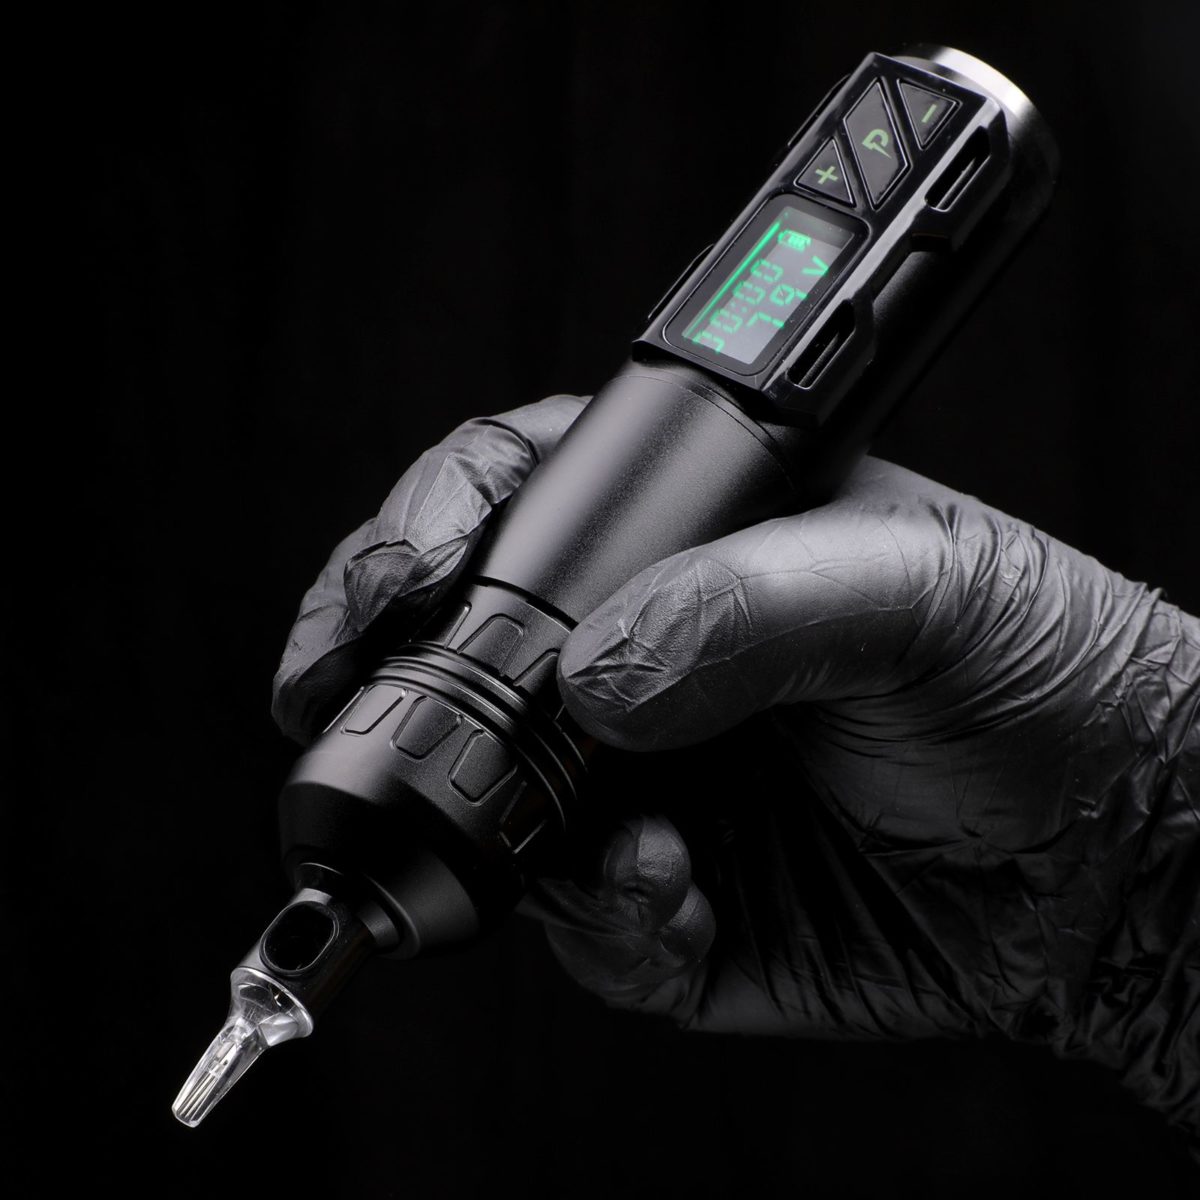 Stigma Rotary Tattoo Pen Wireless All-in-one Tattoo Machine EM172